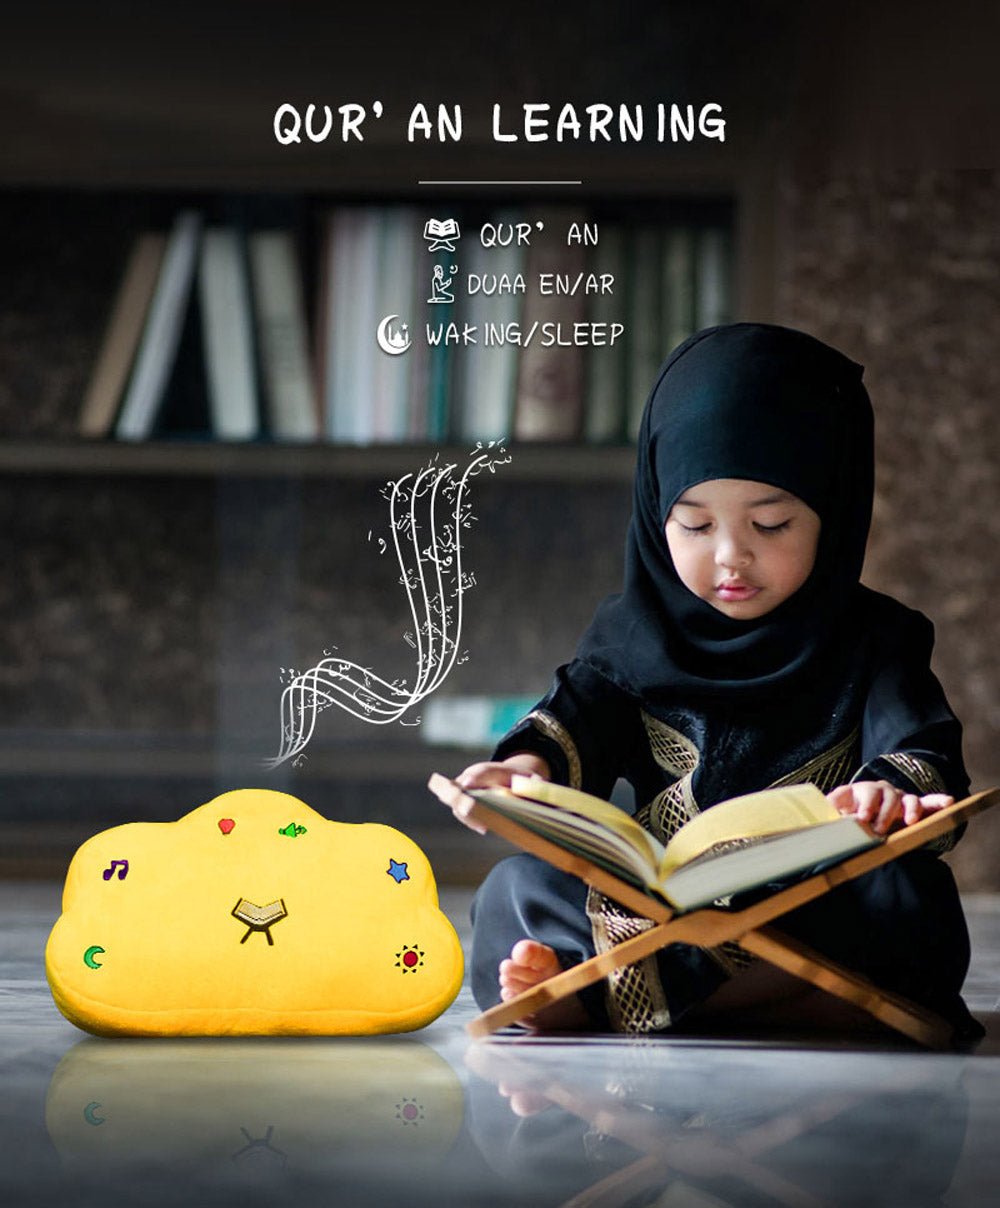 CRONY QB-910 guran speaker Muslim Kids Toy Gift Quran Pillow SQ910 - Edragonmall.com